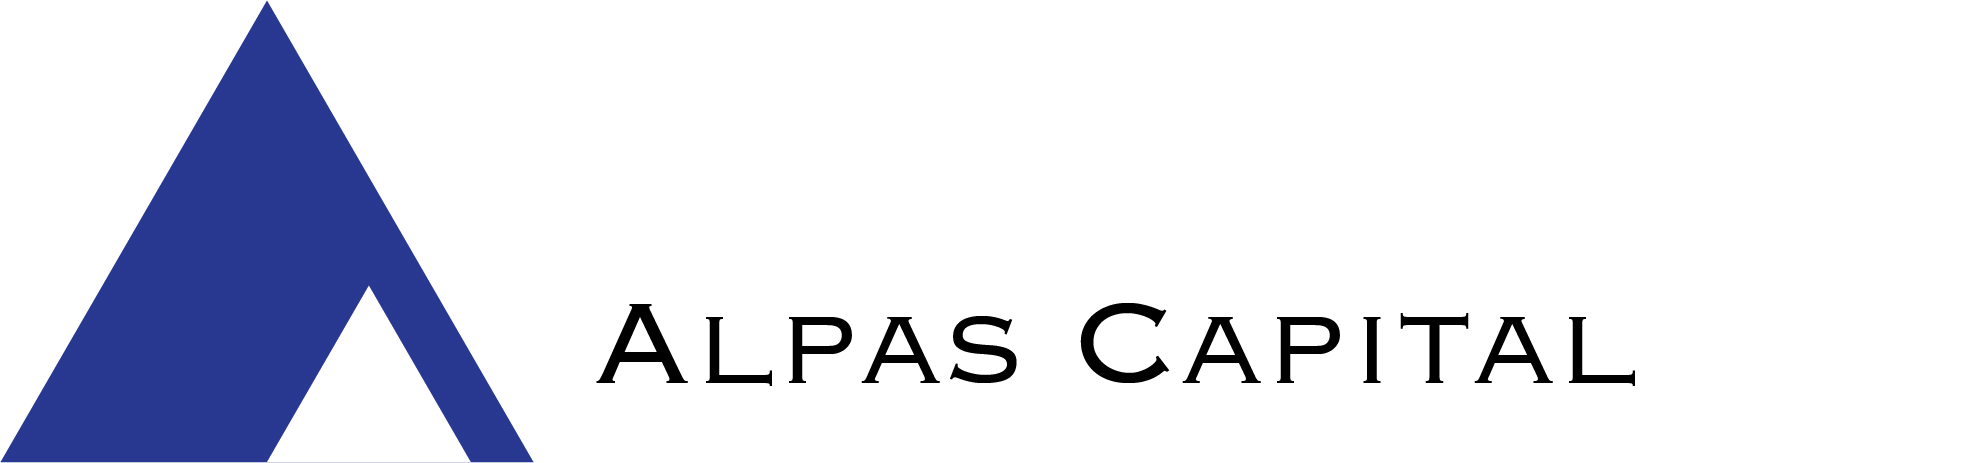 Alpas Capital